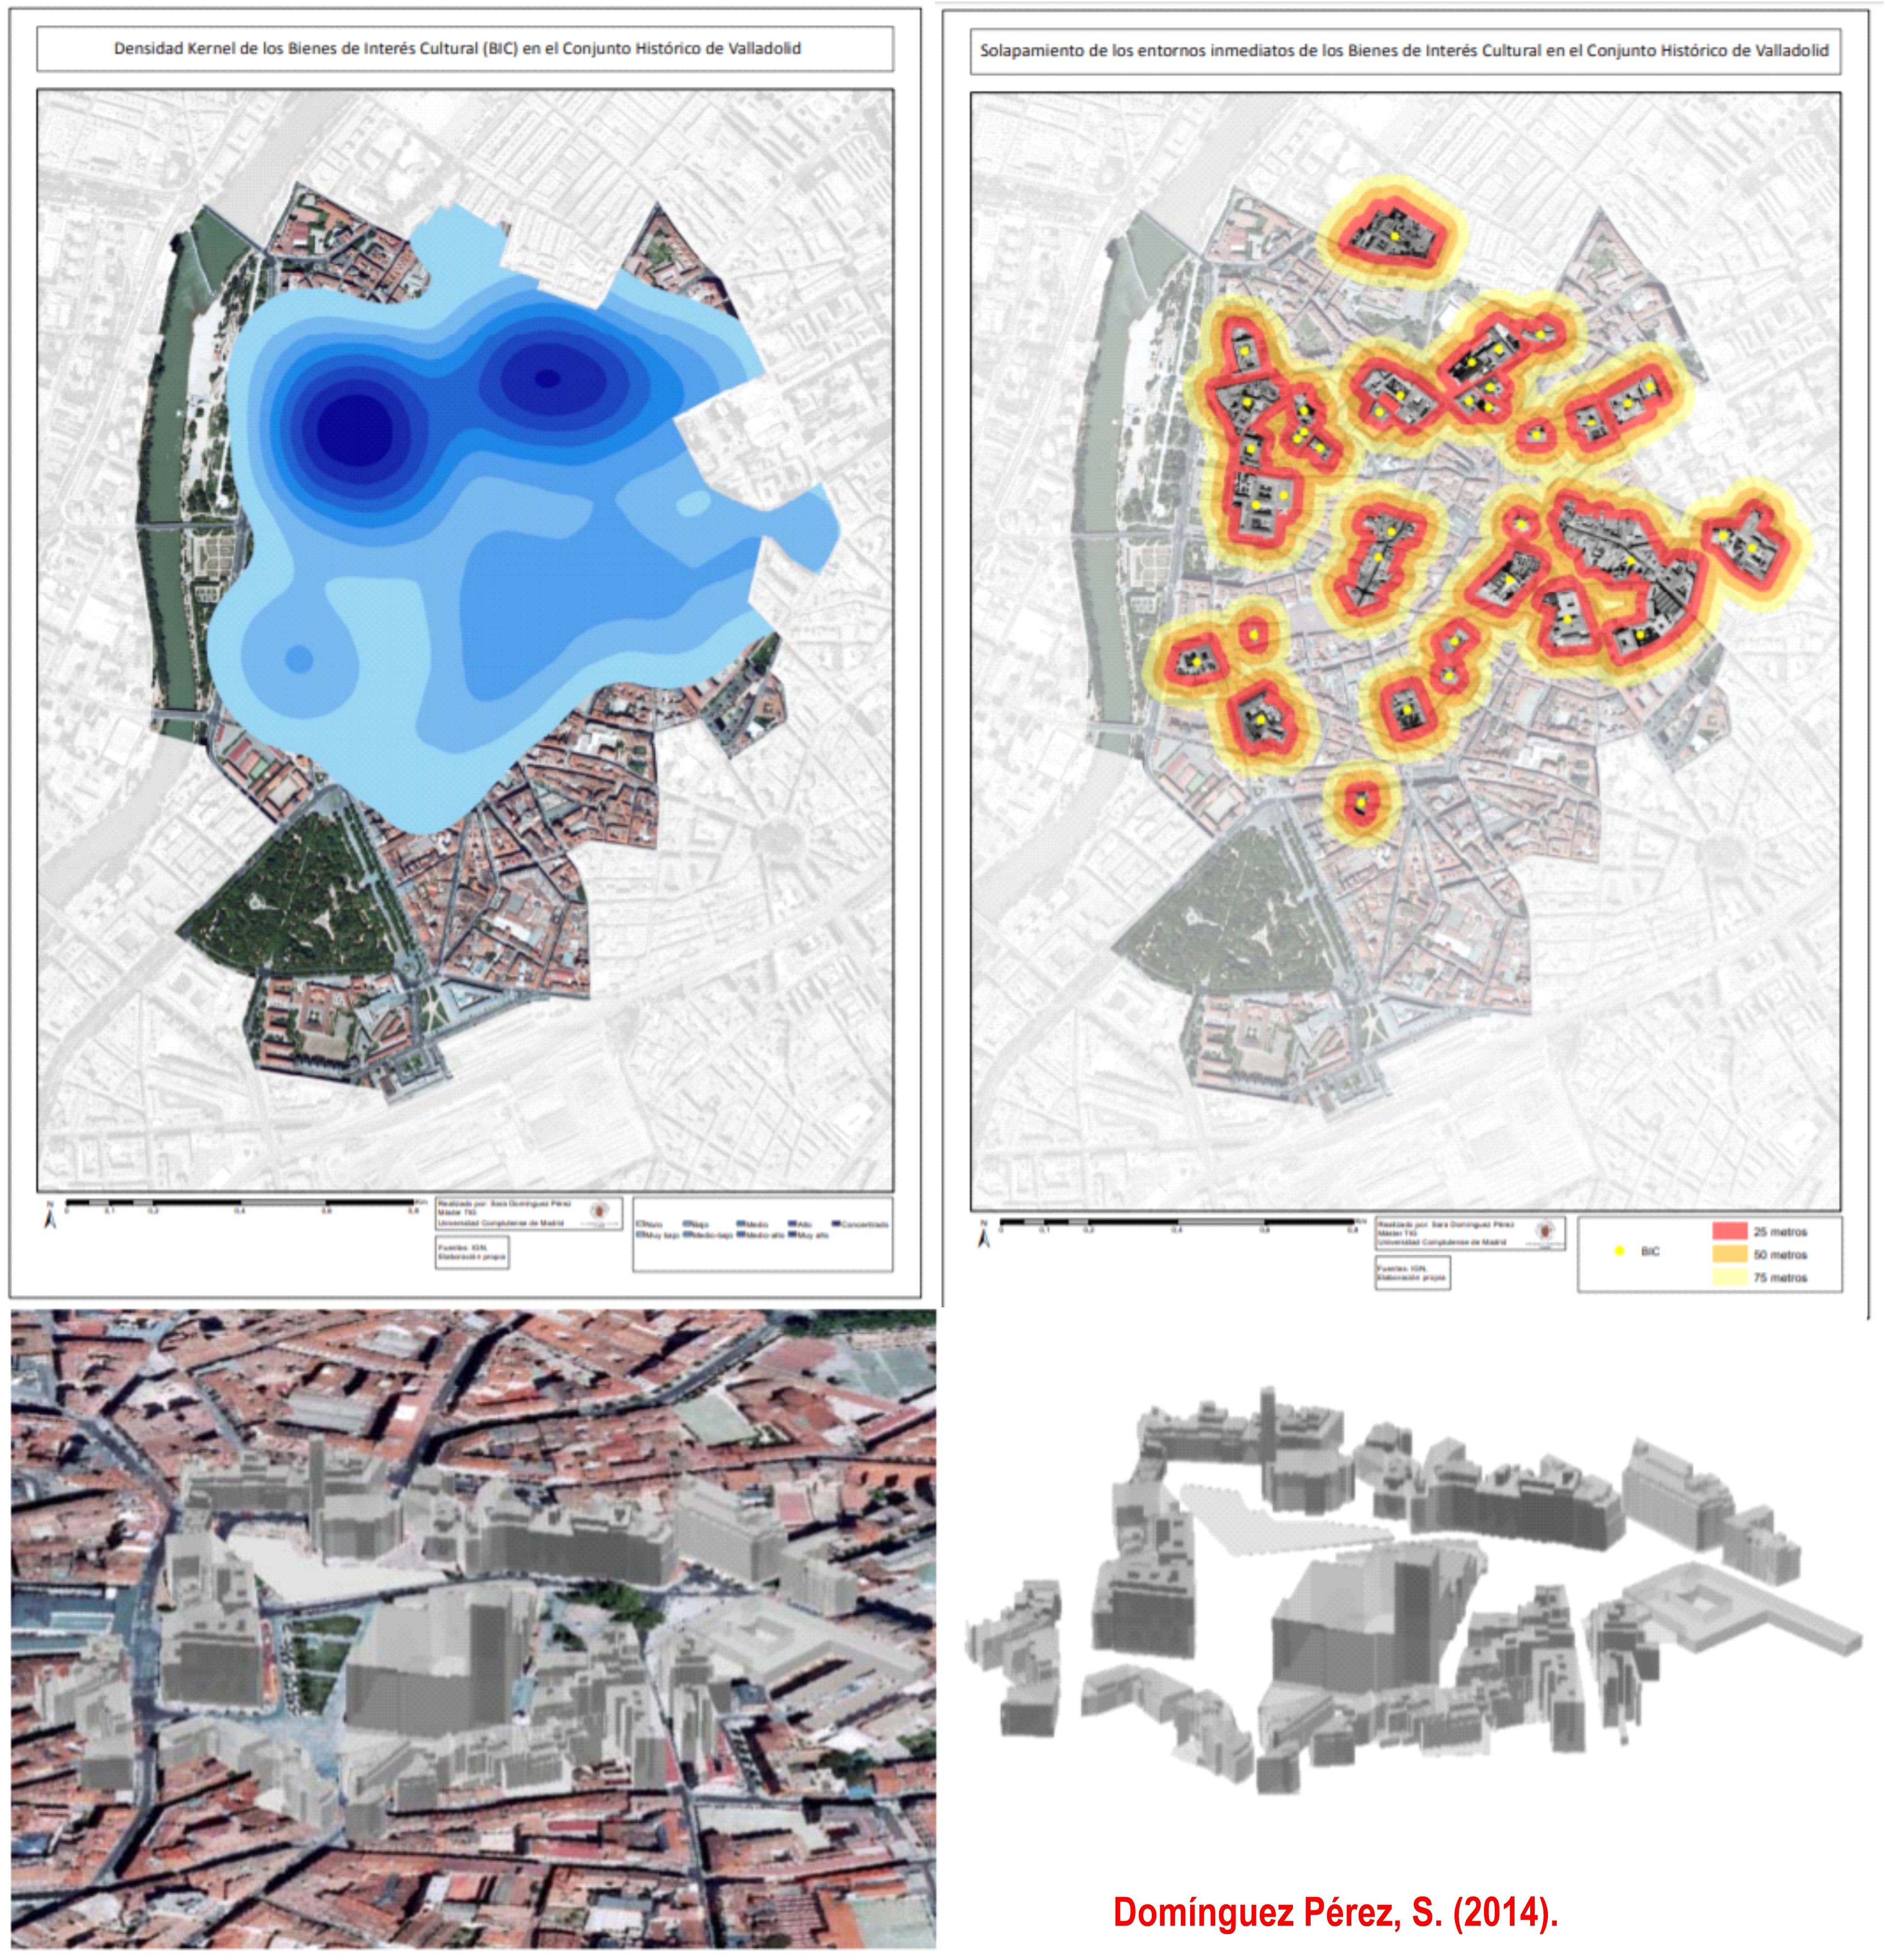 Aplicación de las TIG para la delimitación de entornos BIC en la ciudad de Valladolid. Fuente: Domínguez Pérez, S. (2014). Trabajo Fin de Máster. https://eprints.ucm.es/28478/